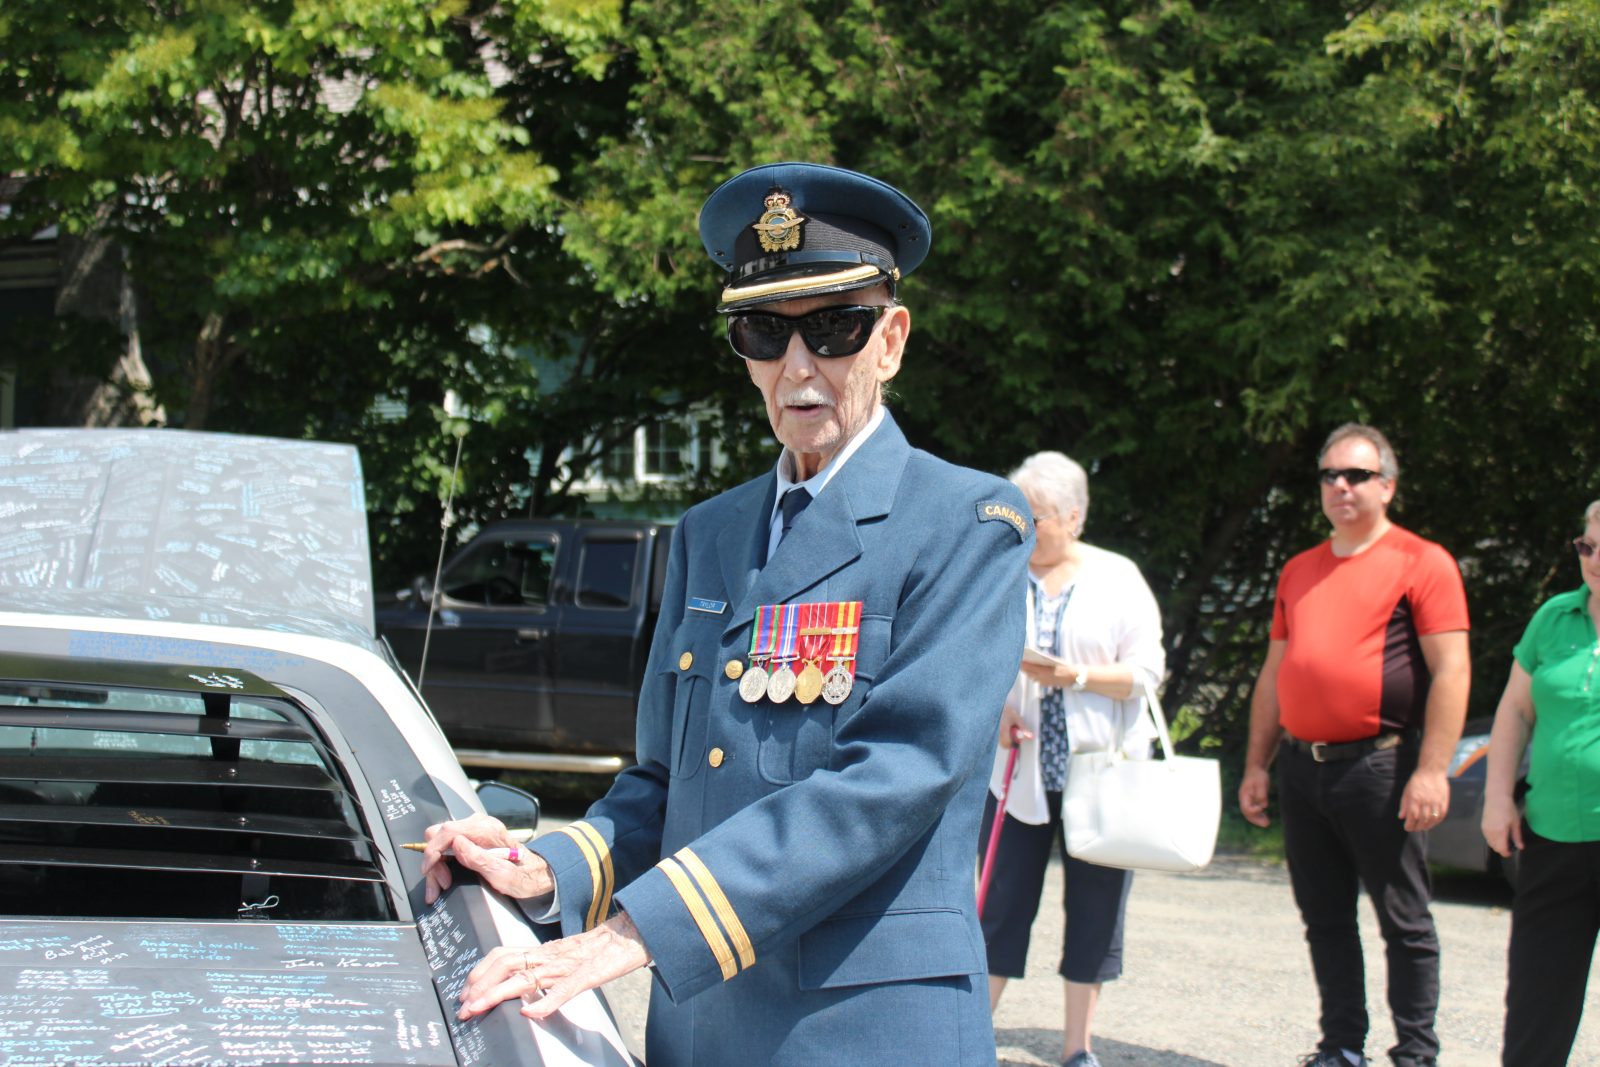 Classic car honours military veterans